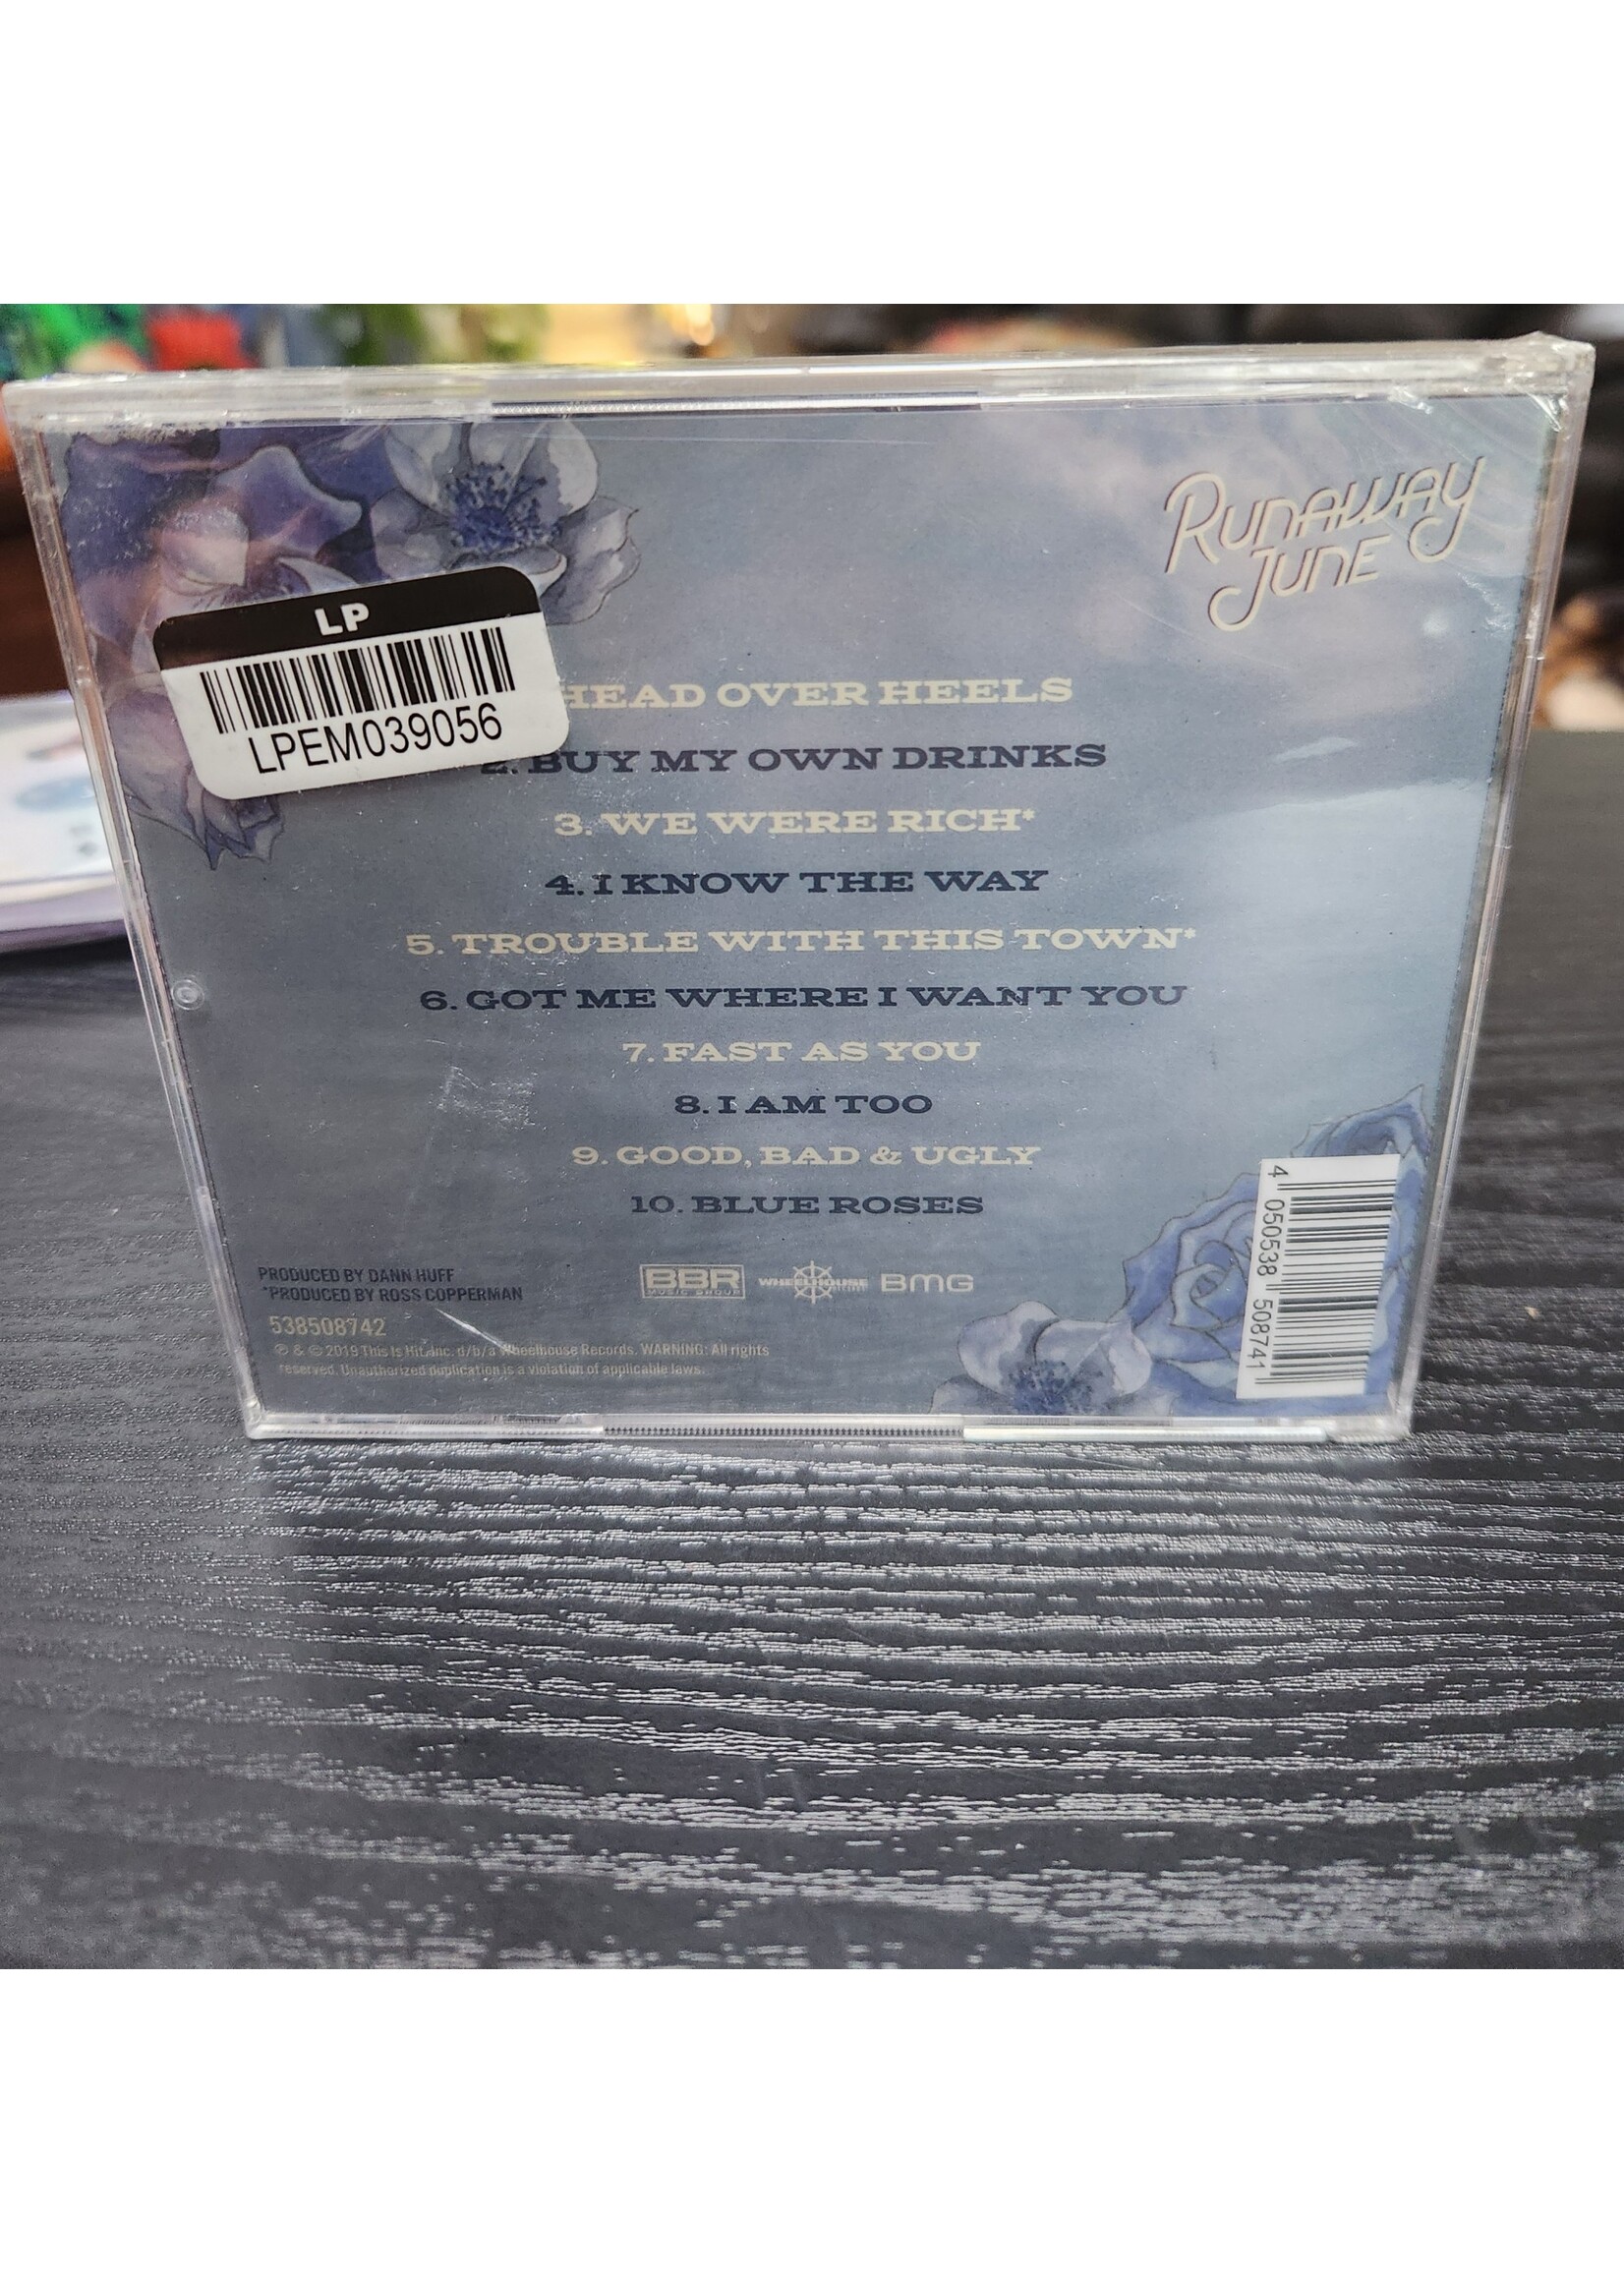 Runaway June - Blue Roses CD